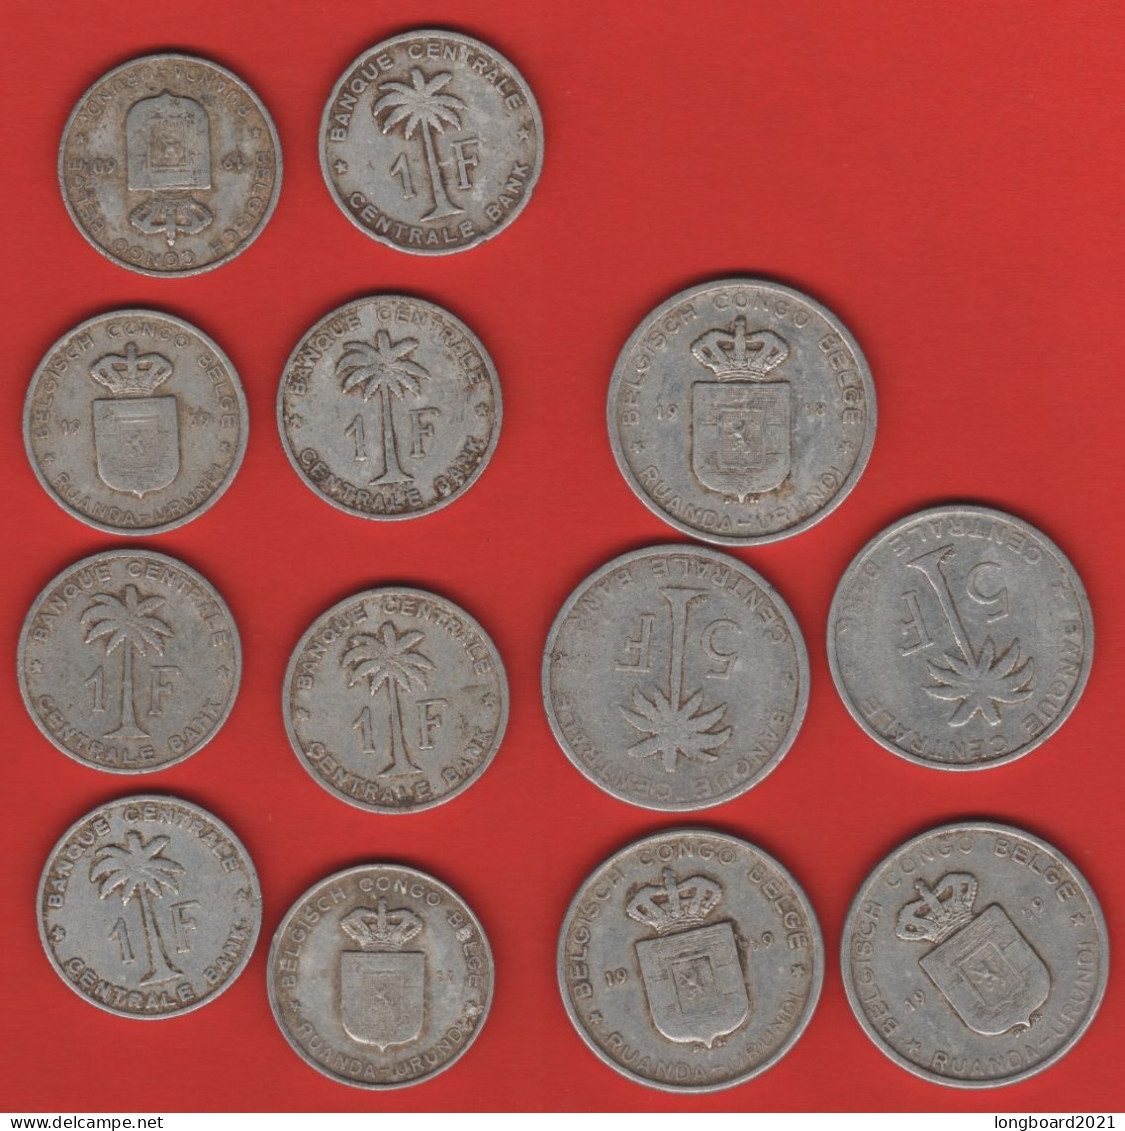 RUANDA-URUNDI - LOT 13 COINS 1,5 FRANCS 1957-1960 - 1951-1960: Baldovino I